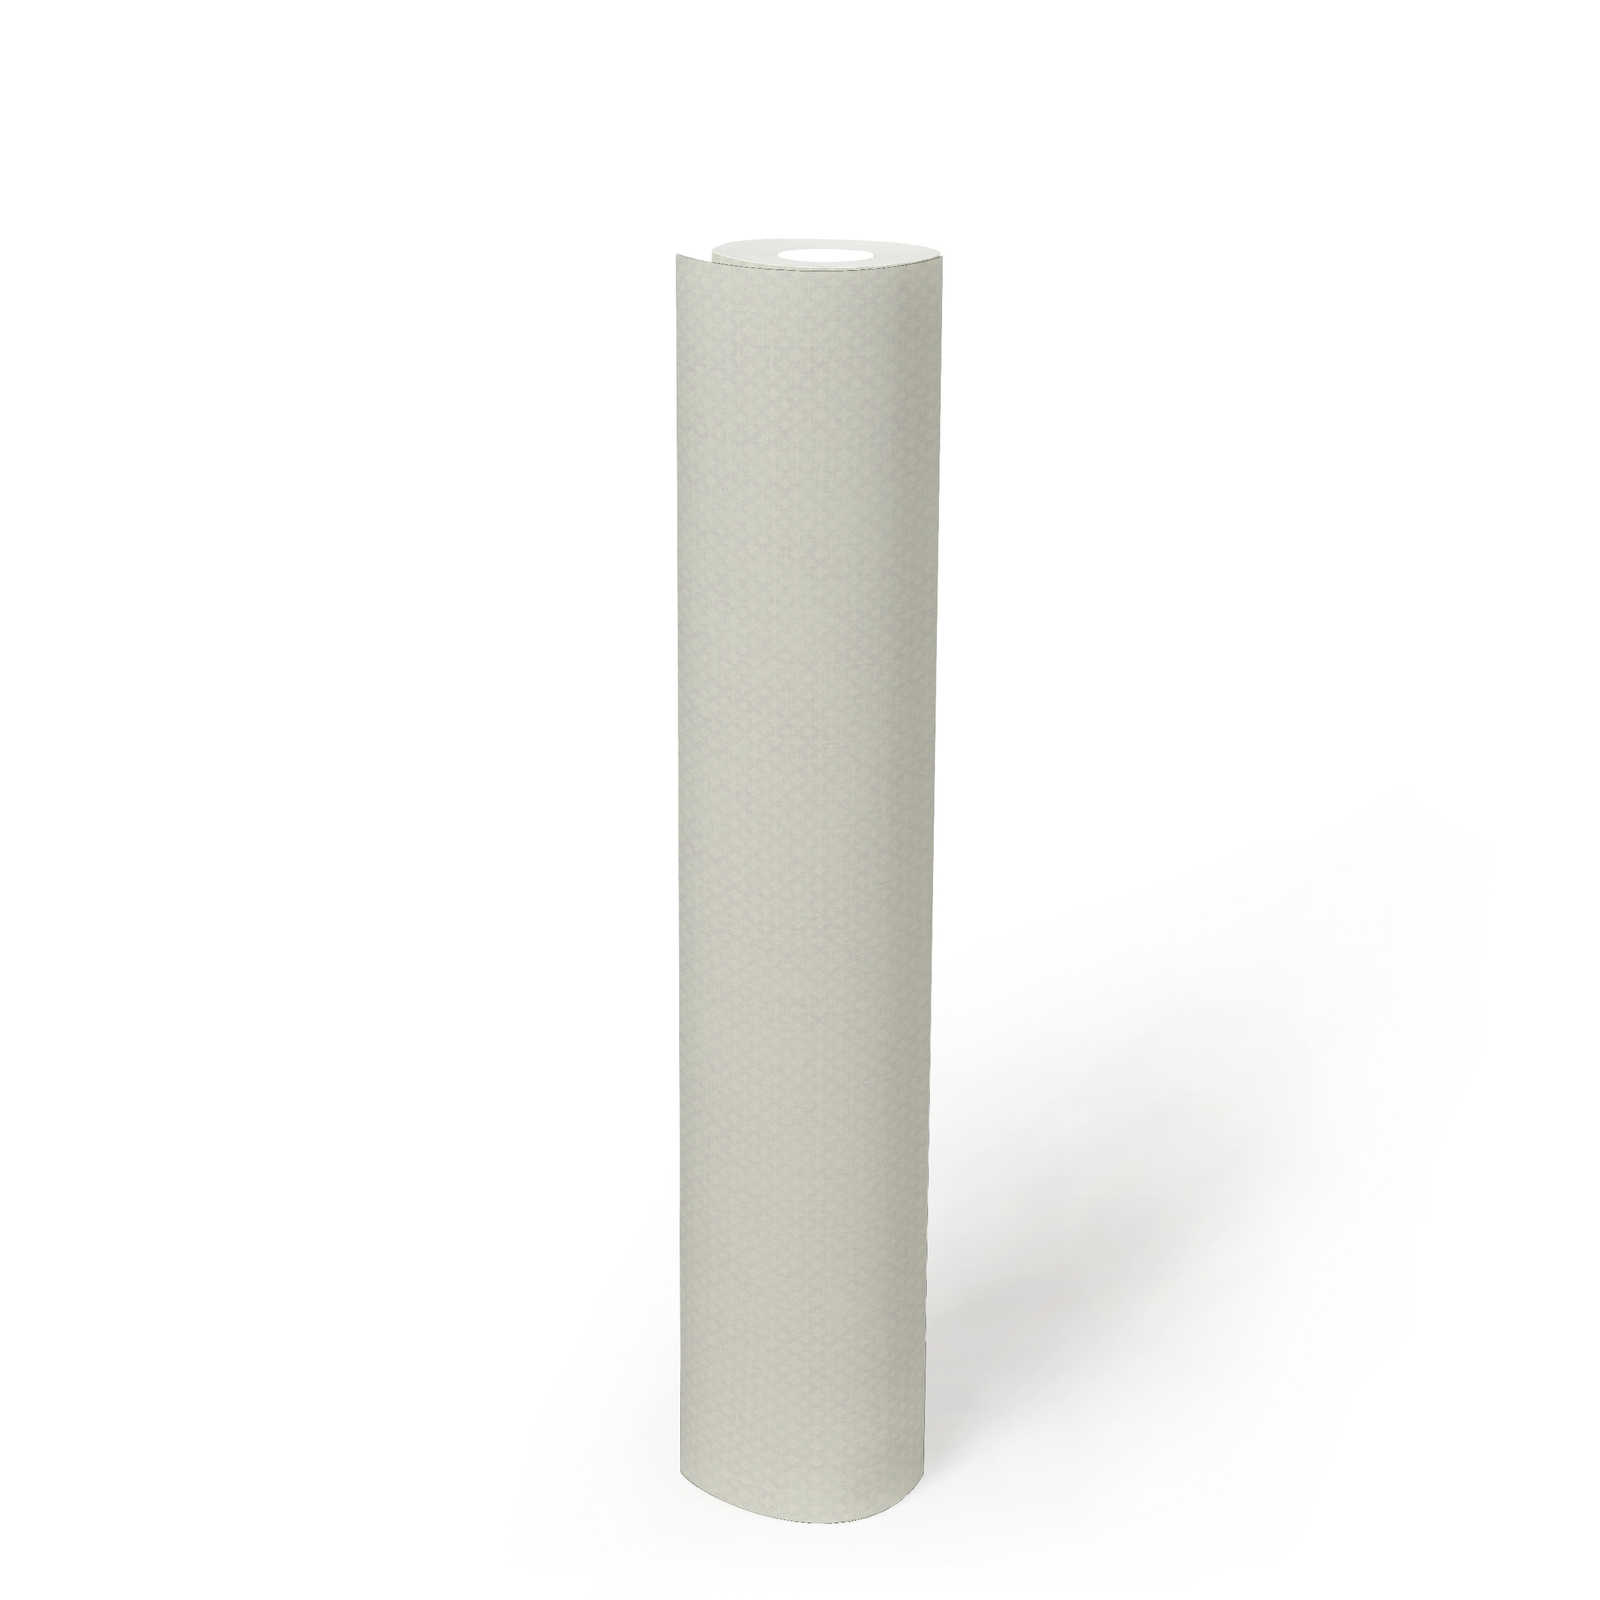             Vliestapete mit feinem Strukturmuster – Hellgrau, Weiß
        